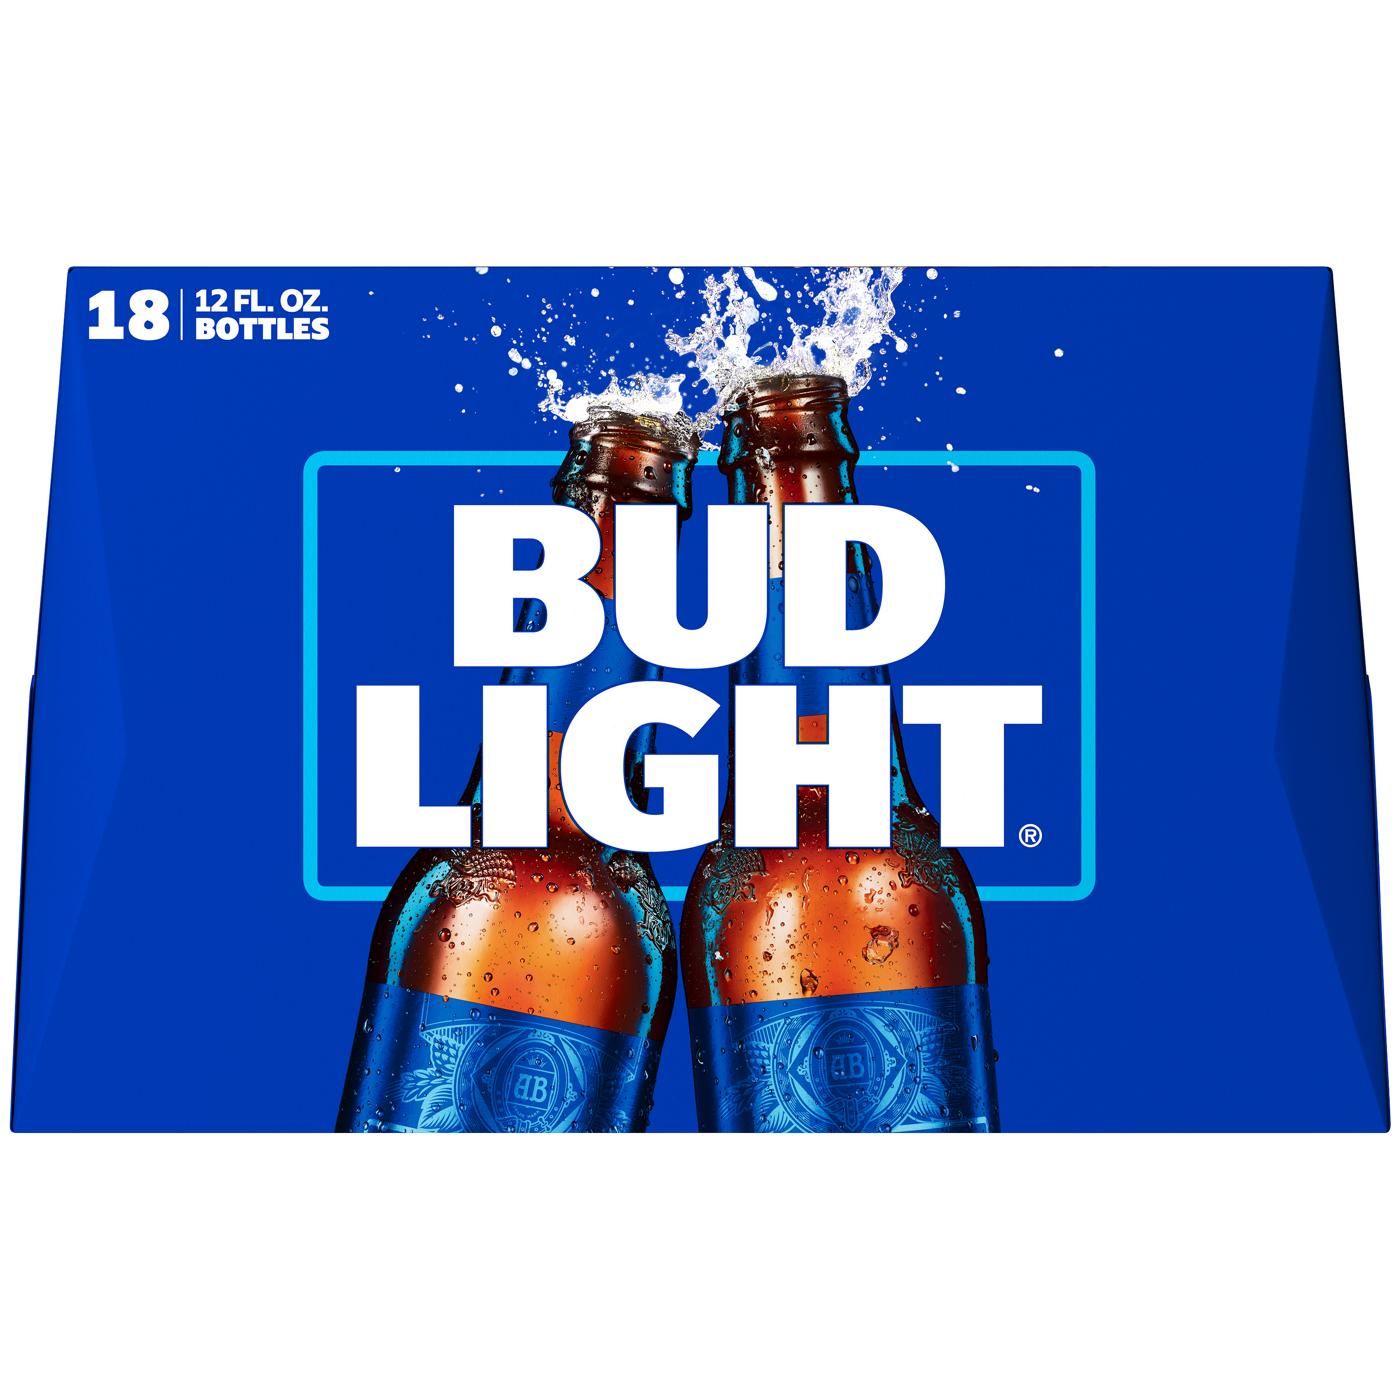 Bud Light Beer 12 oz Bottles; image 2 of 2